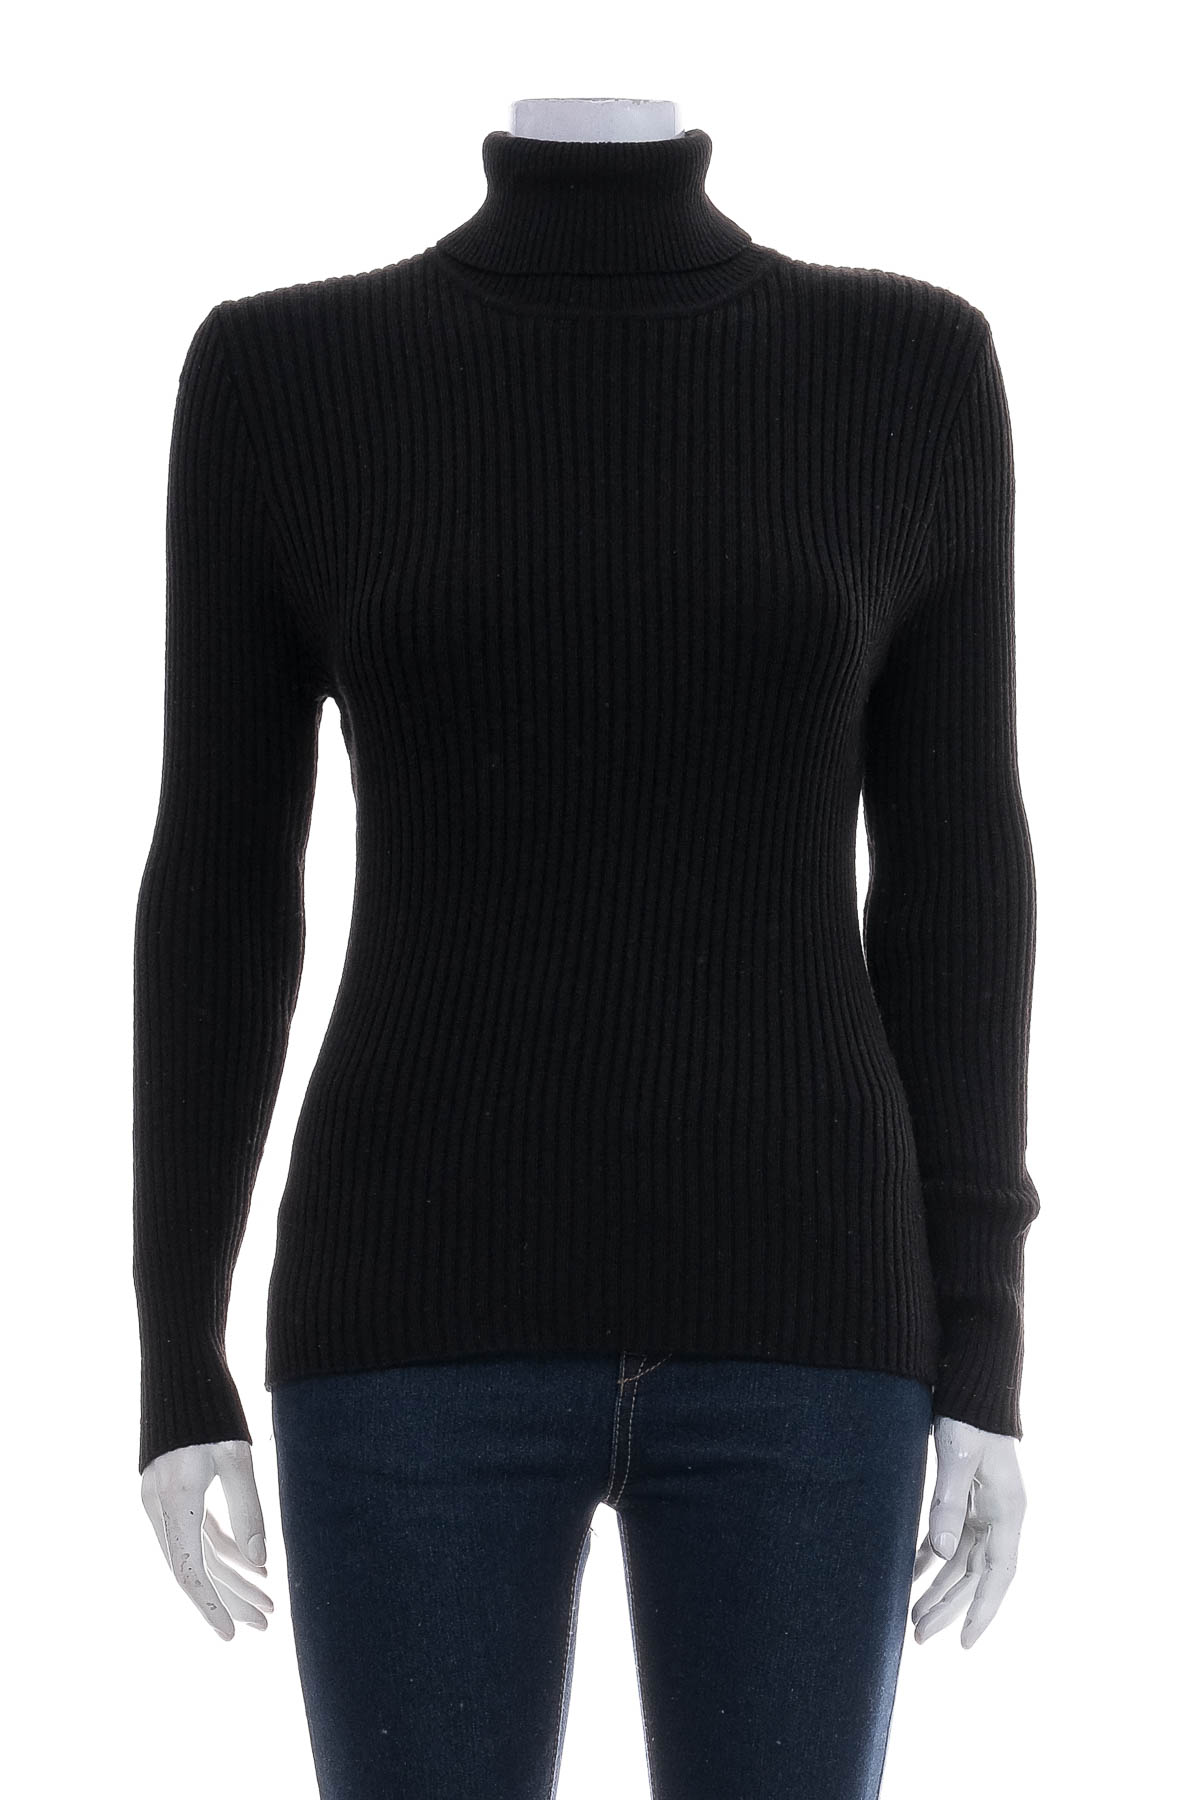 Women's sweater - KnitWell - 0